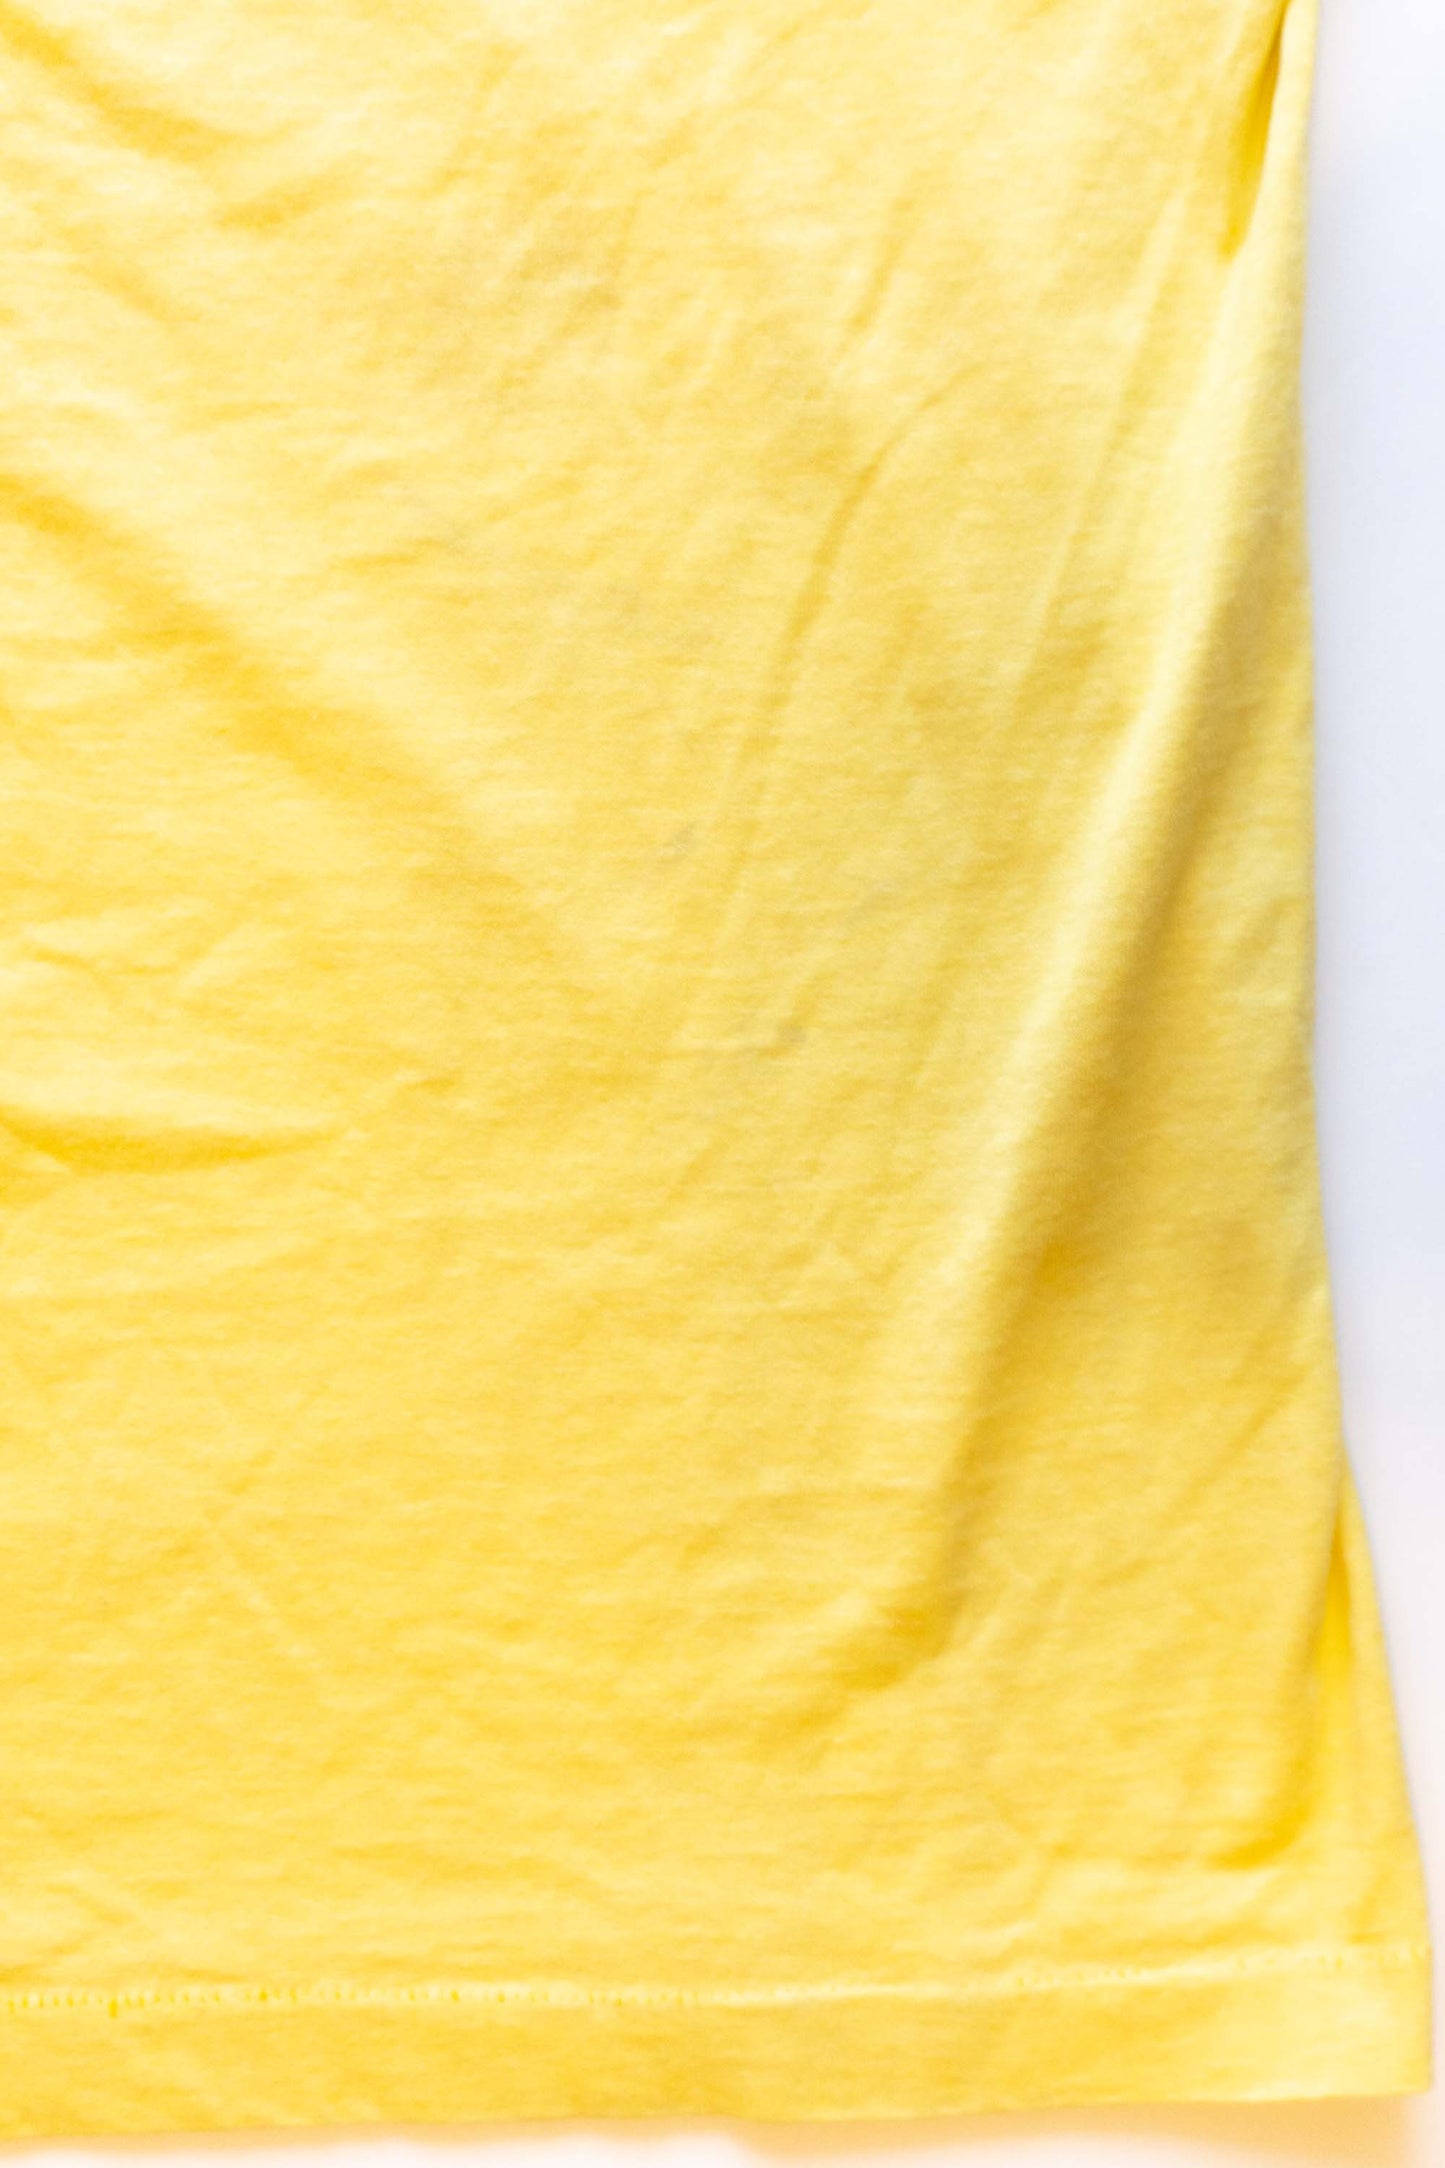 90s Parada del sol Yellow T-shirts